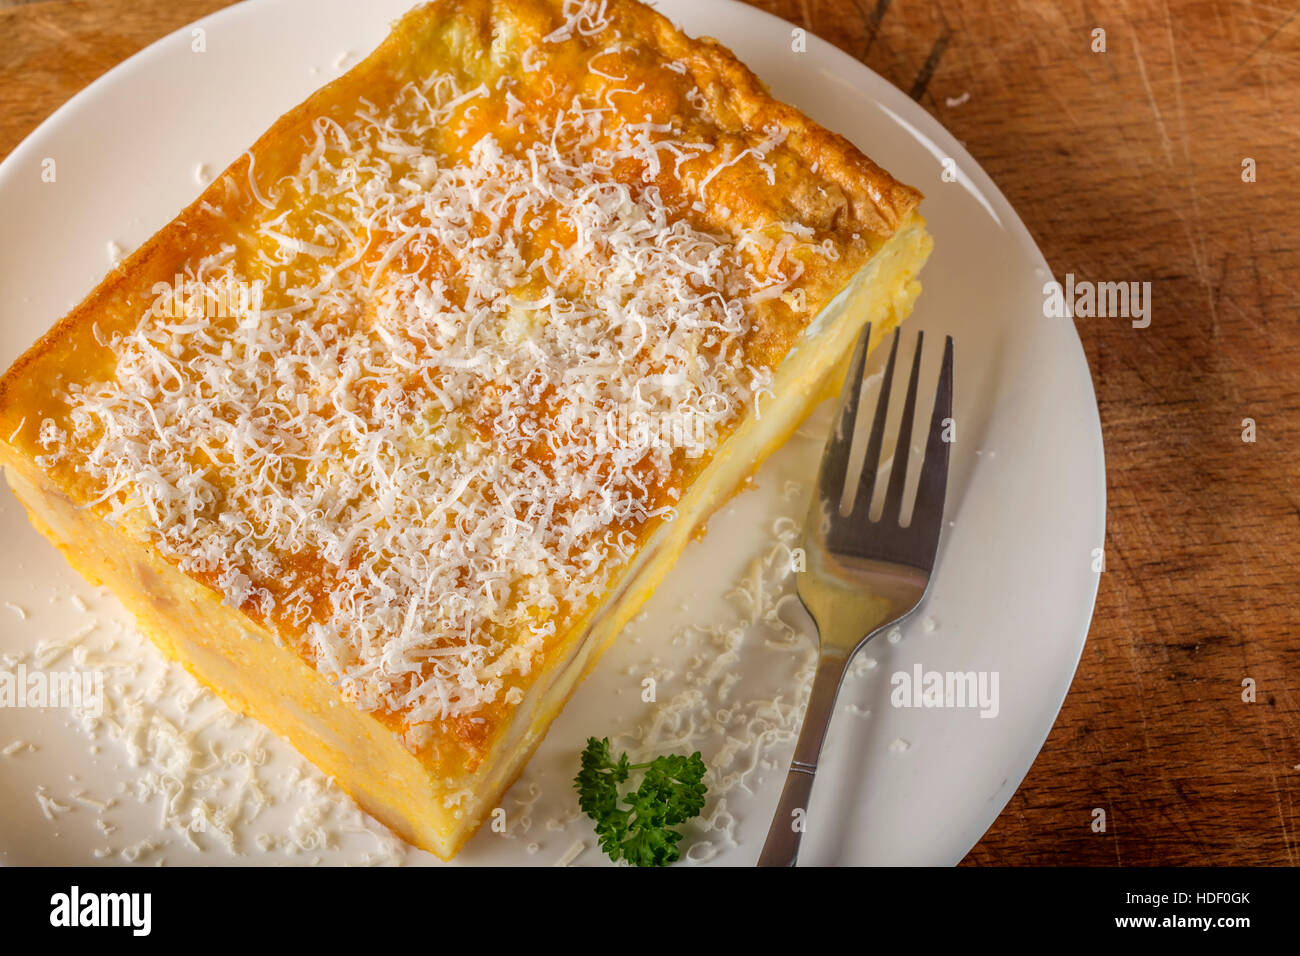 La polenta au four avec des pommes de terre, fromage et brisé des oeufs sur la plaque avec une fourchette Banque D'Images